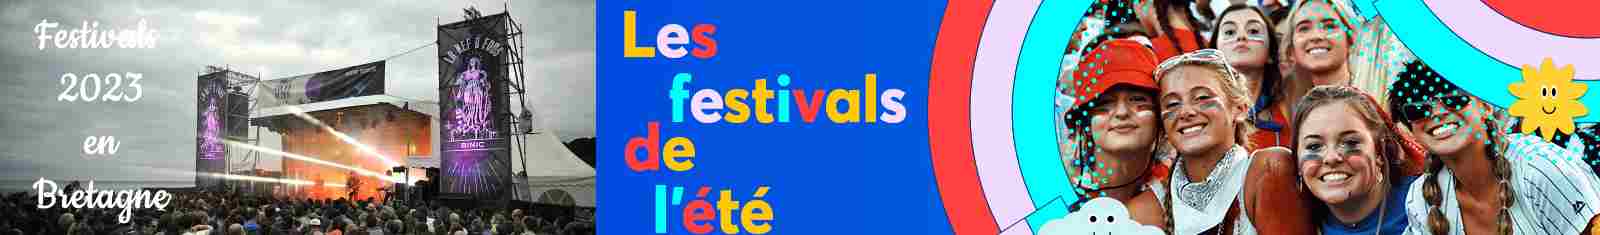 l'agenda des festivals 2023 en bretagne